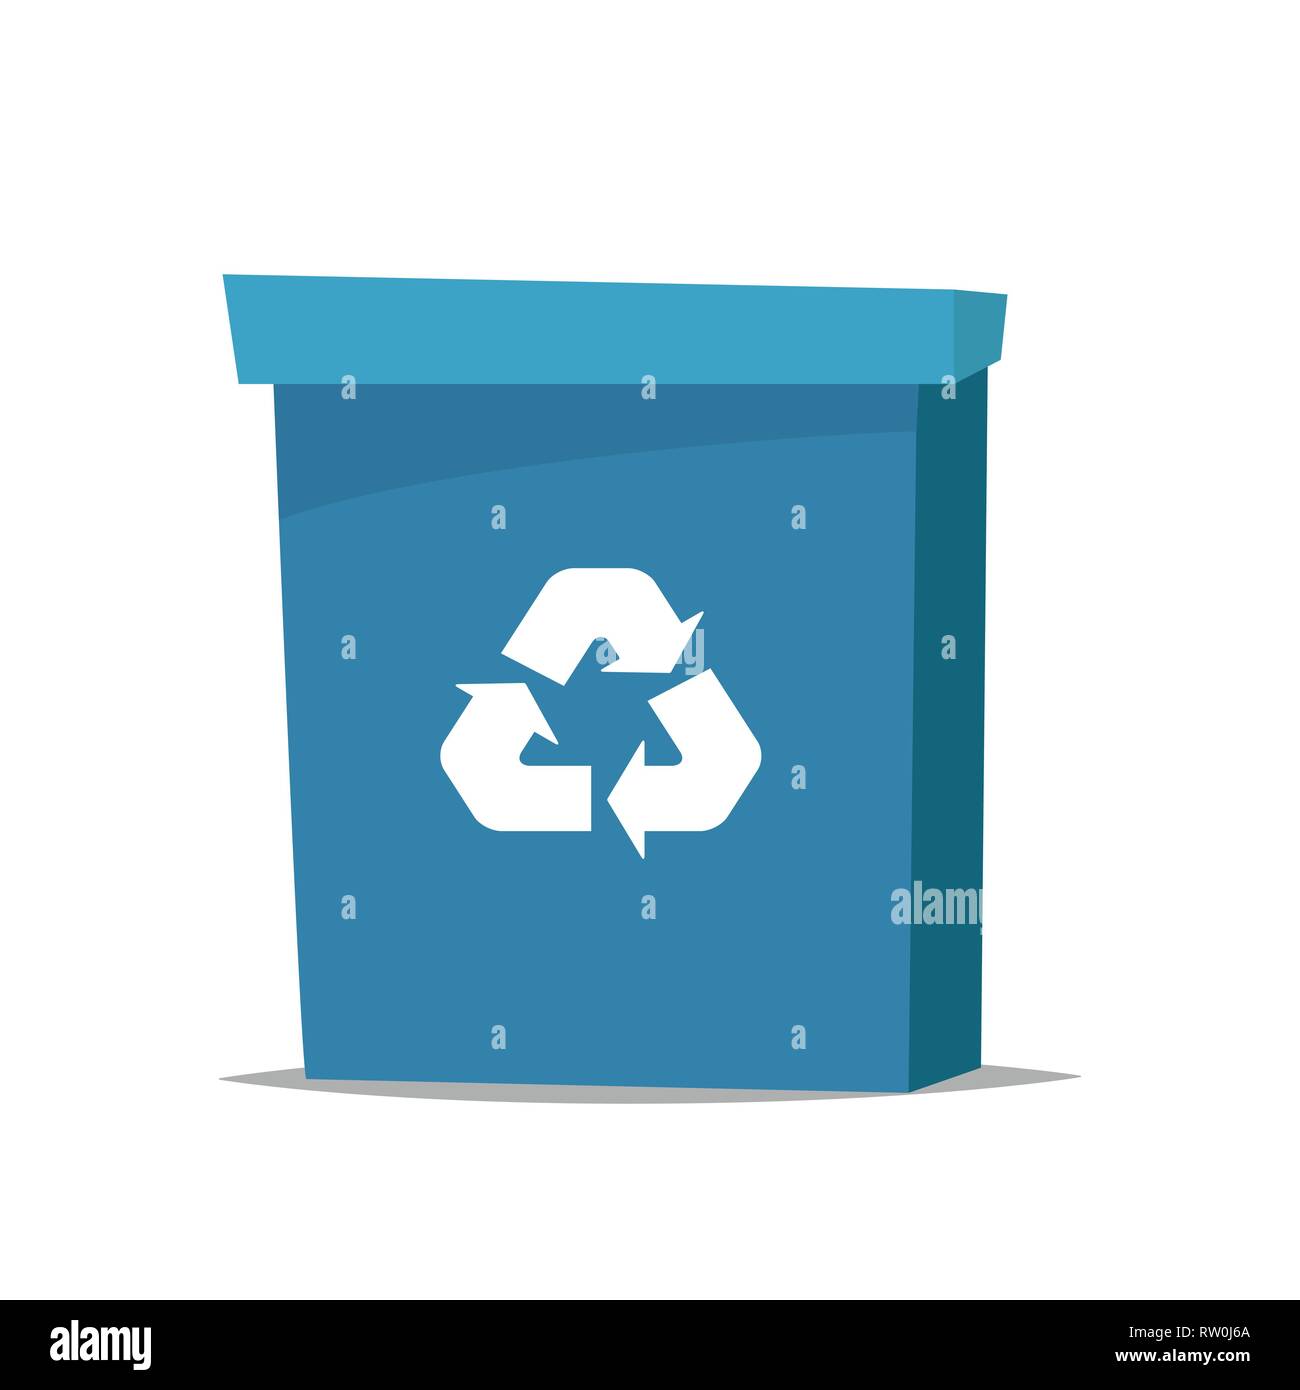 Contenedores de reciclaje para papel, vidrio y productos orgánicos, con el  símbolo de reciclaje en la parte superior en color azul, verde y amarillo.